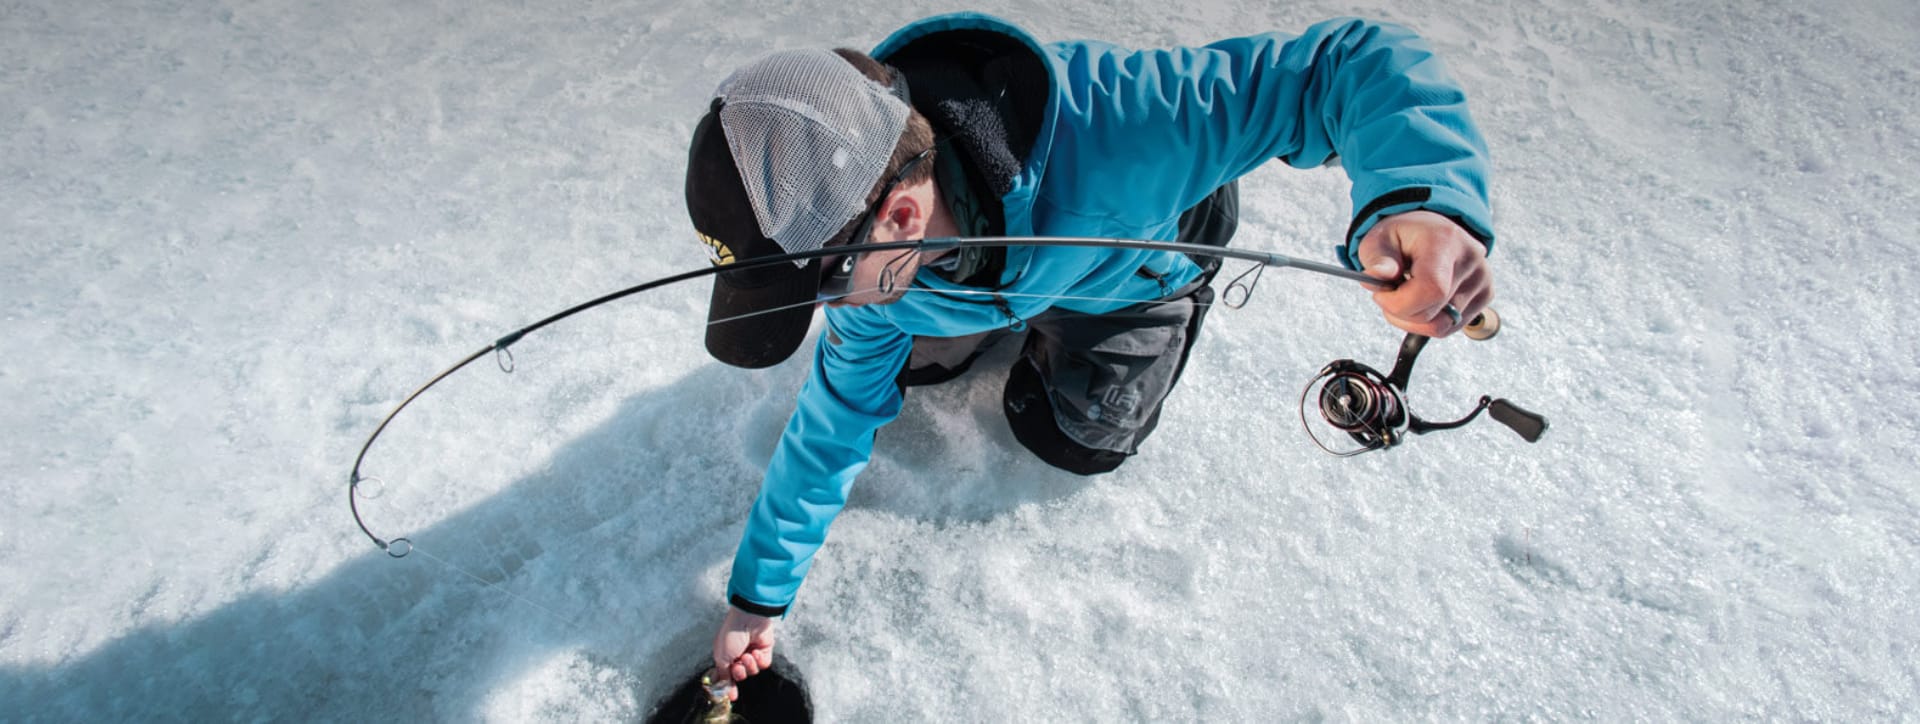 Ice Fishing Rods - Ice Fishing Reels - Ice Fishing Tackle